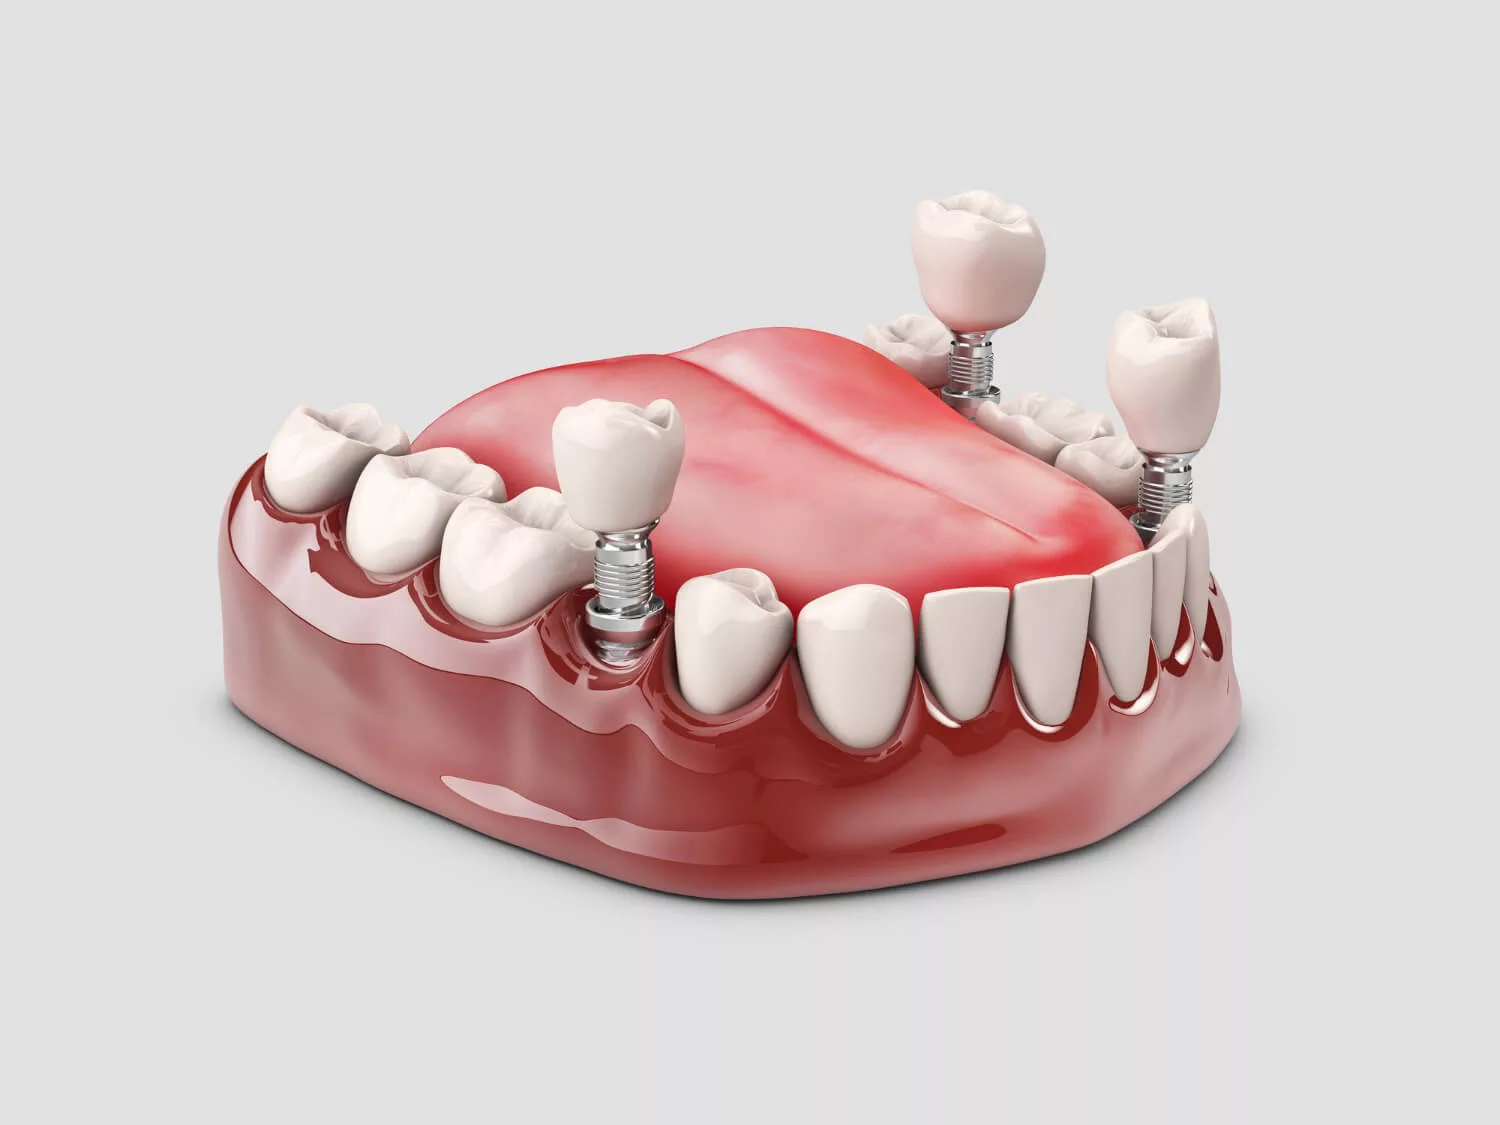 human-teeth-dental-implant-3d-illustration